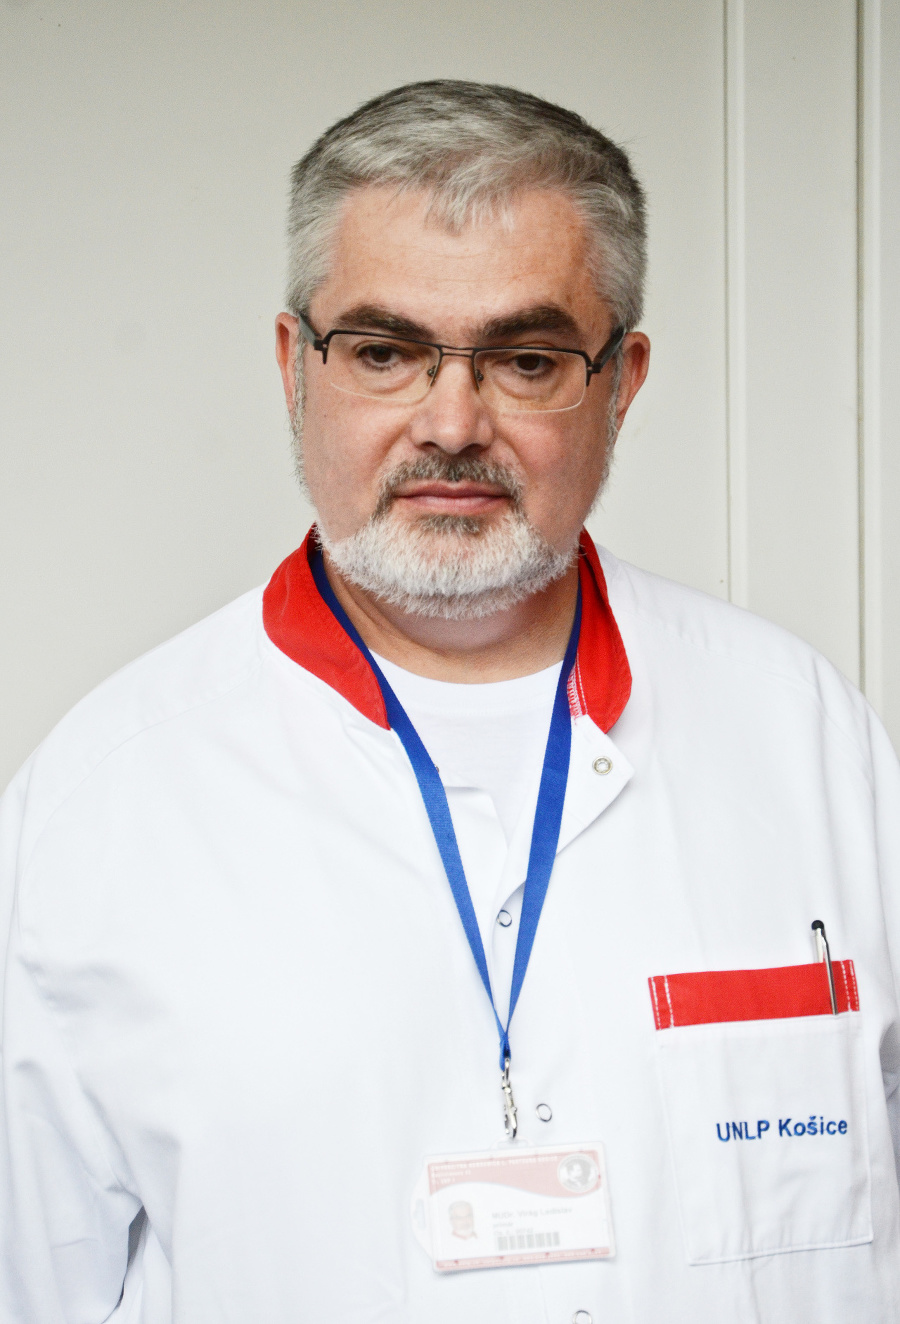 Primár kliniky Ladislav Virág